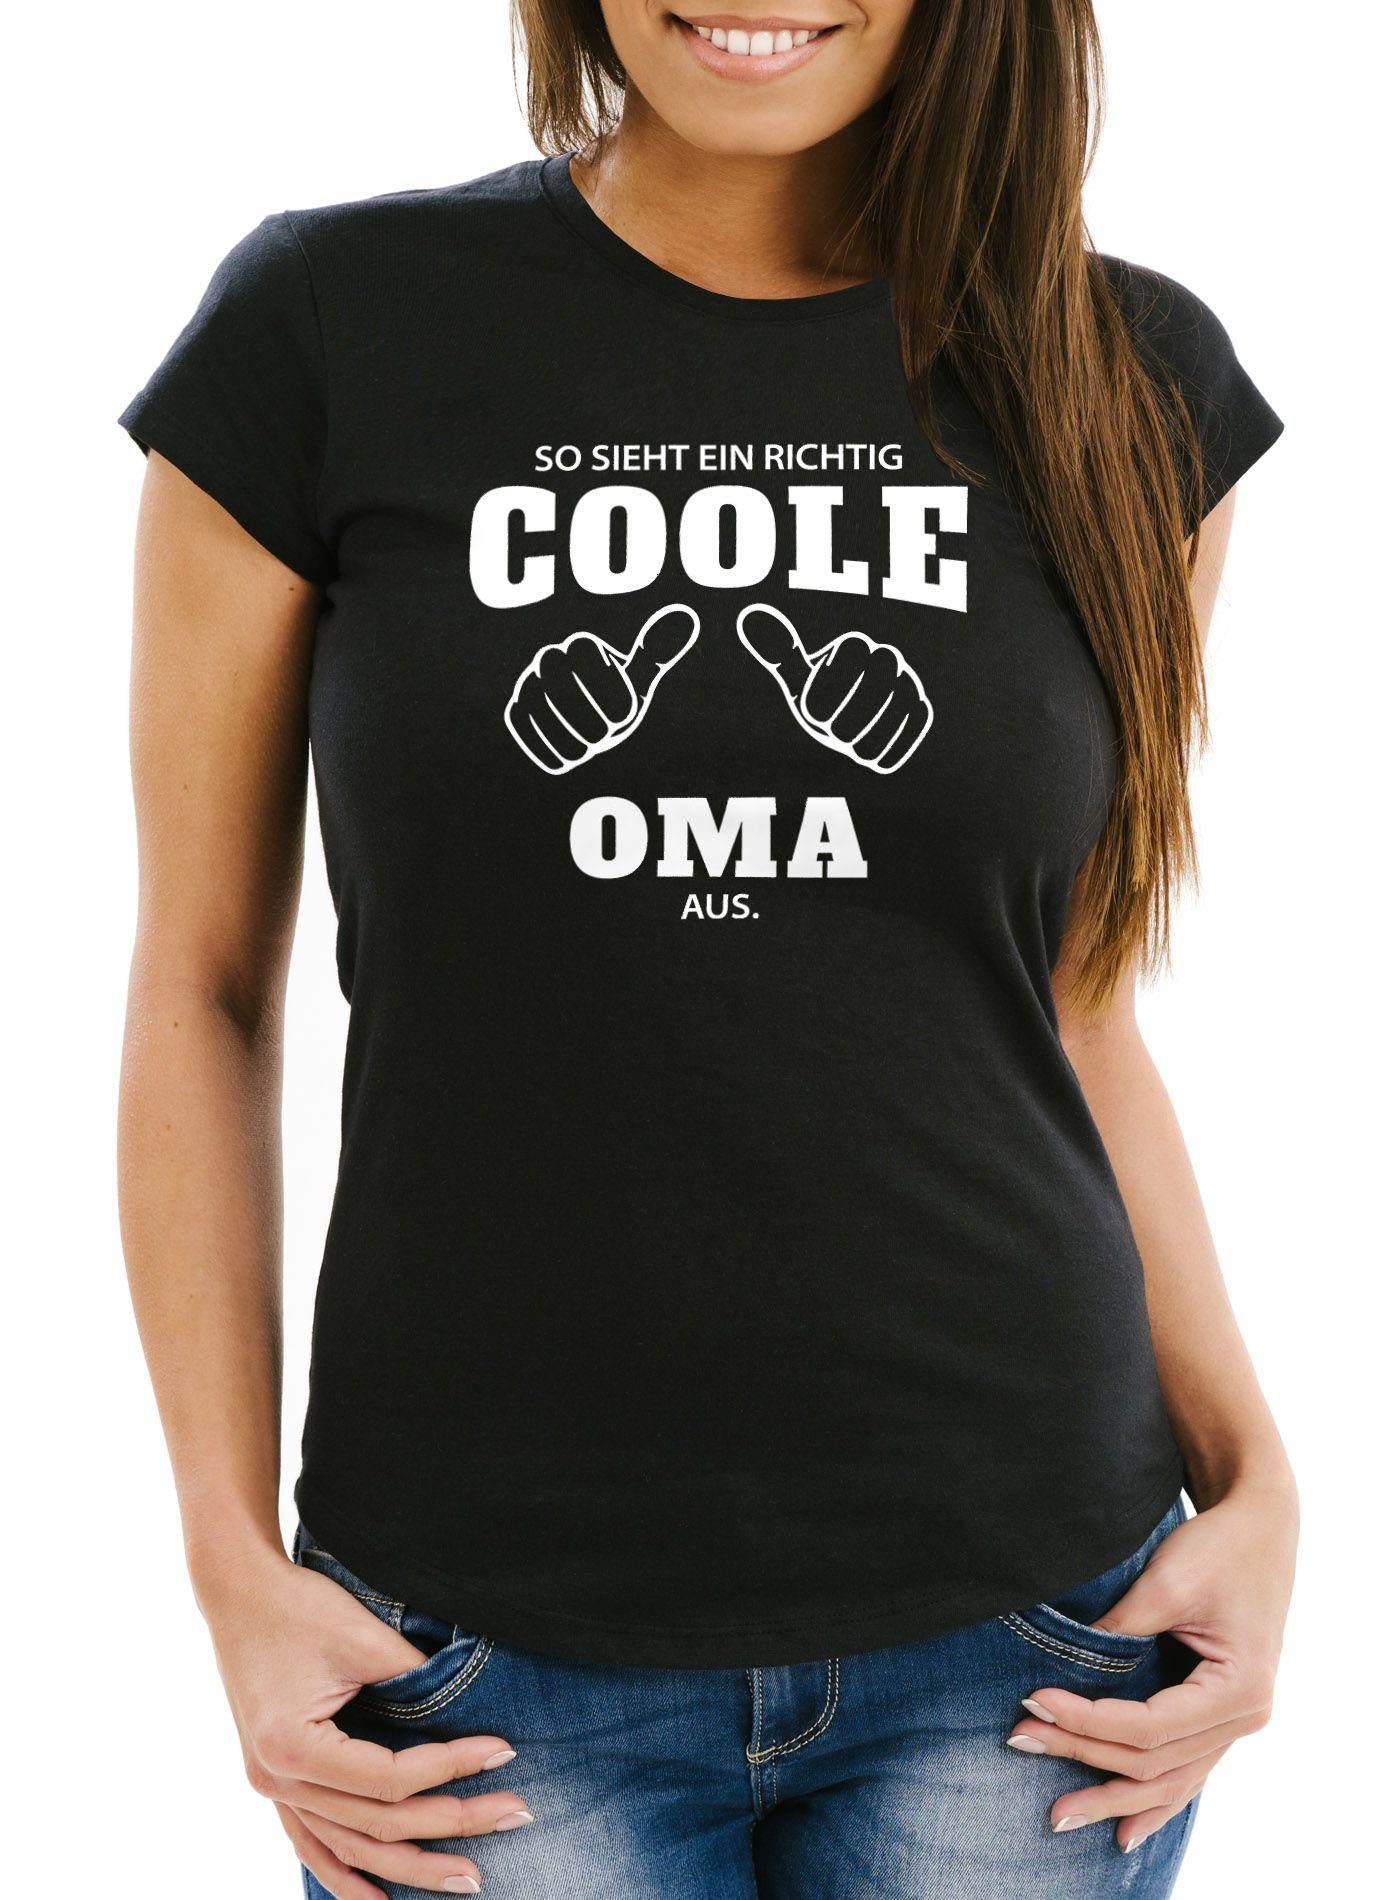 coole Object] [object Print-Shirt schwarz aus MoonWorks mit eine T-Shirt Print Damen sieht Oma So richtig Moonworks®